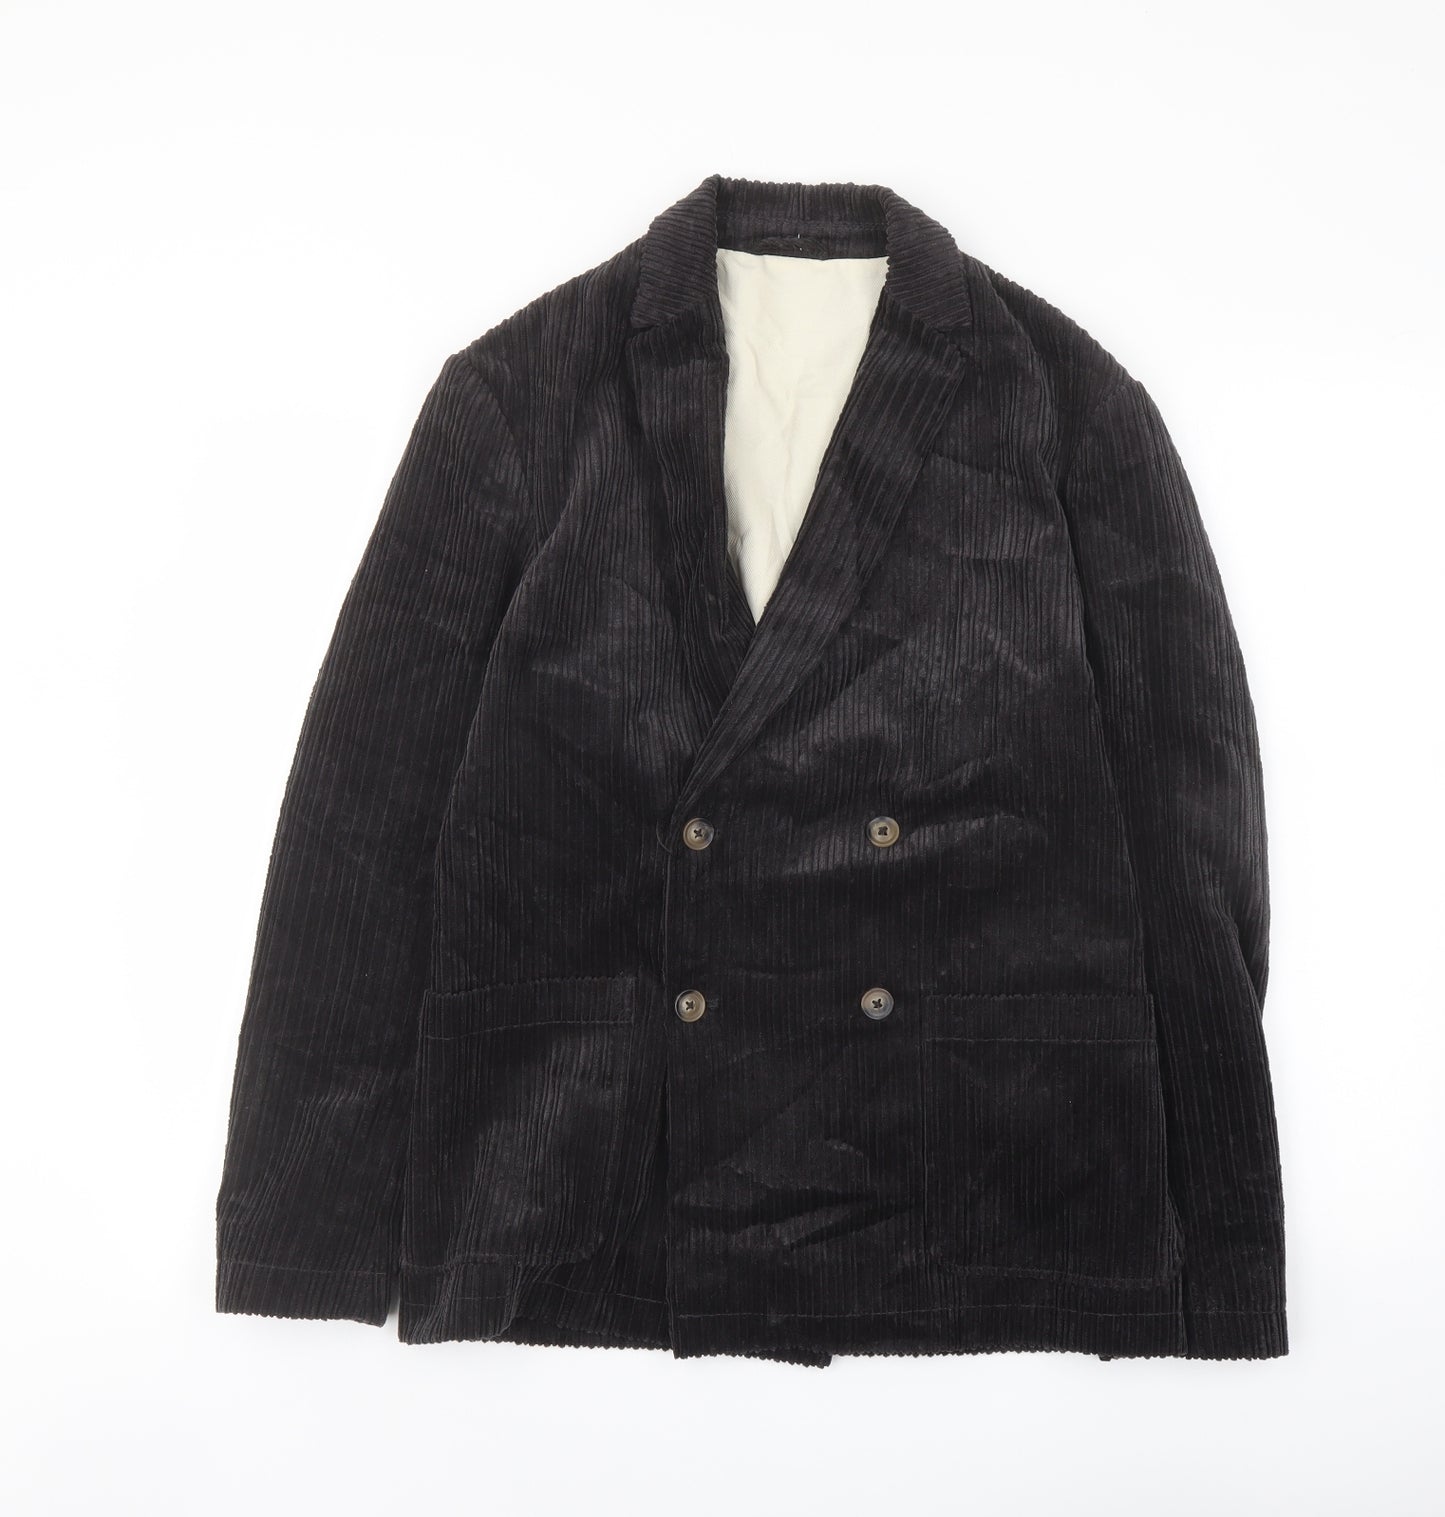 Zara Womens Black Jacket Blazer Size S Button